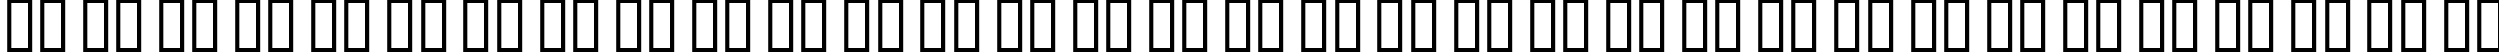 Пример написания русского алфавита шрифтом AlphaMack AOE